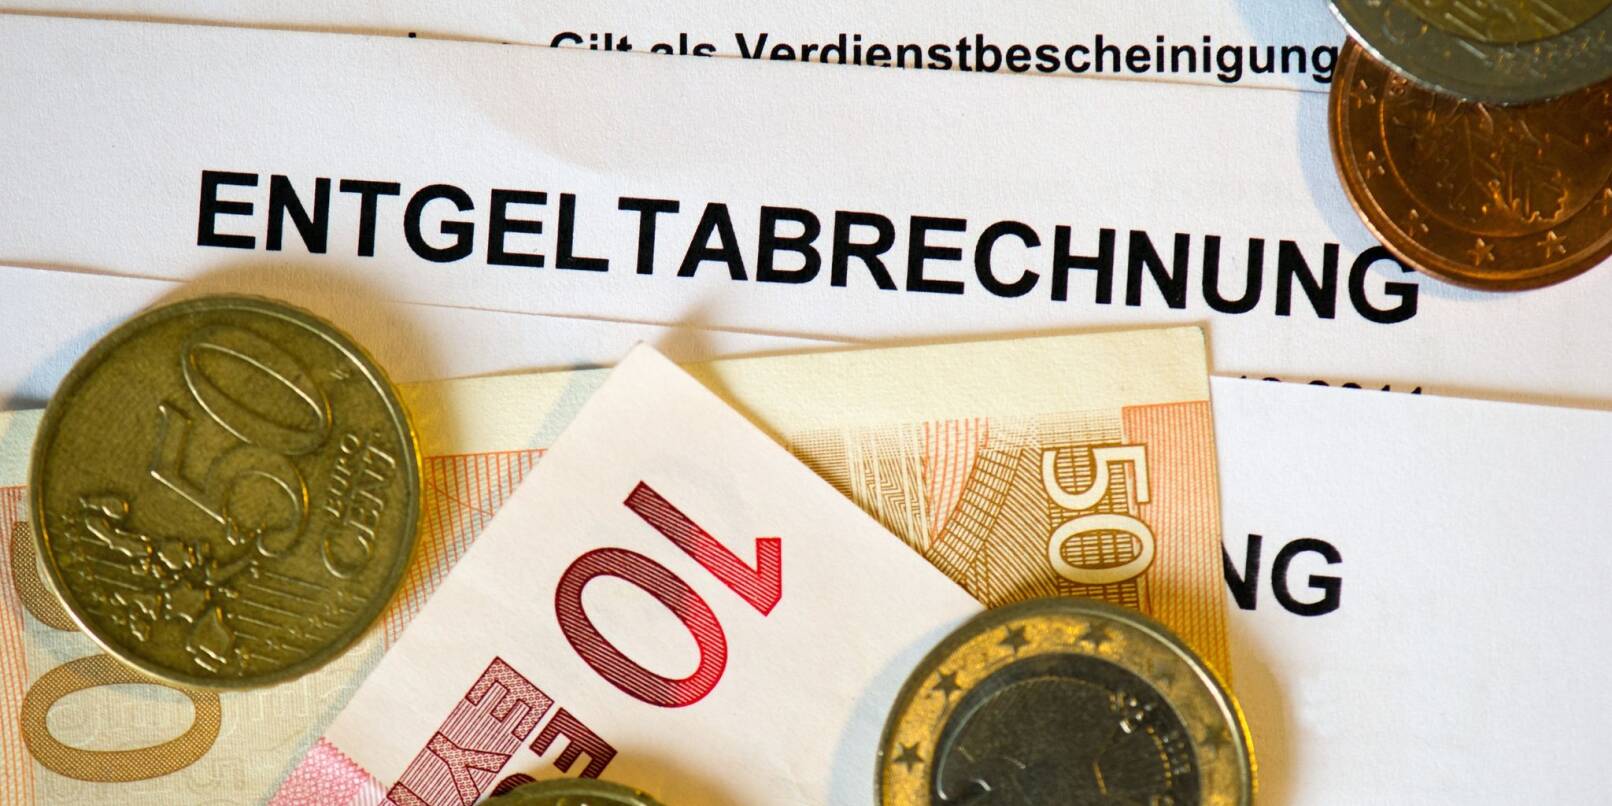 Auf Lohn- und Gehaltsabrechnungen (Entgeltabrechnungen) liegen Euromünzen und Eurogeldscheine.